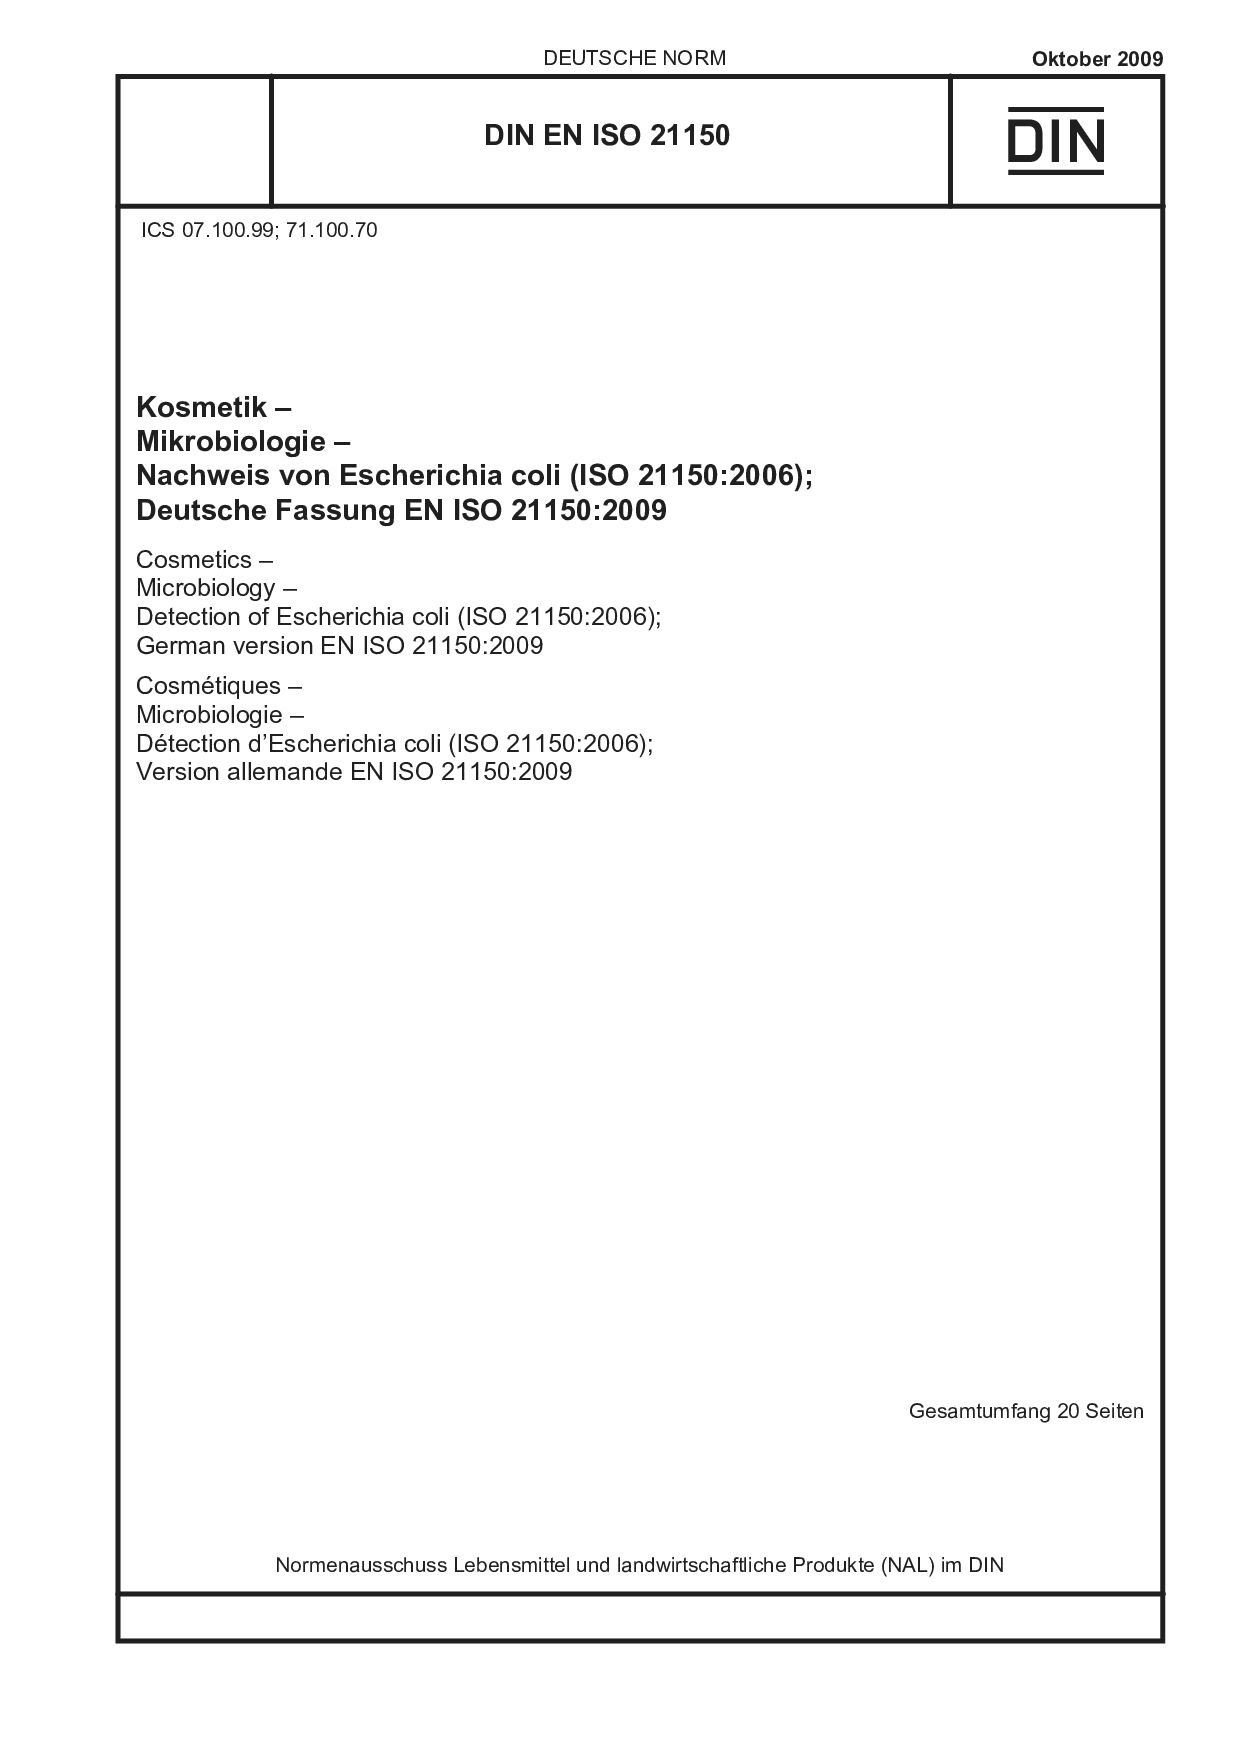 DIN EN ISO 21150:2009封面图